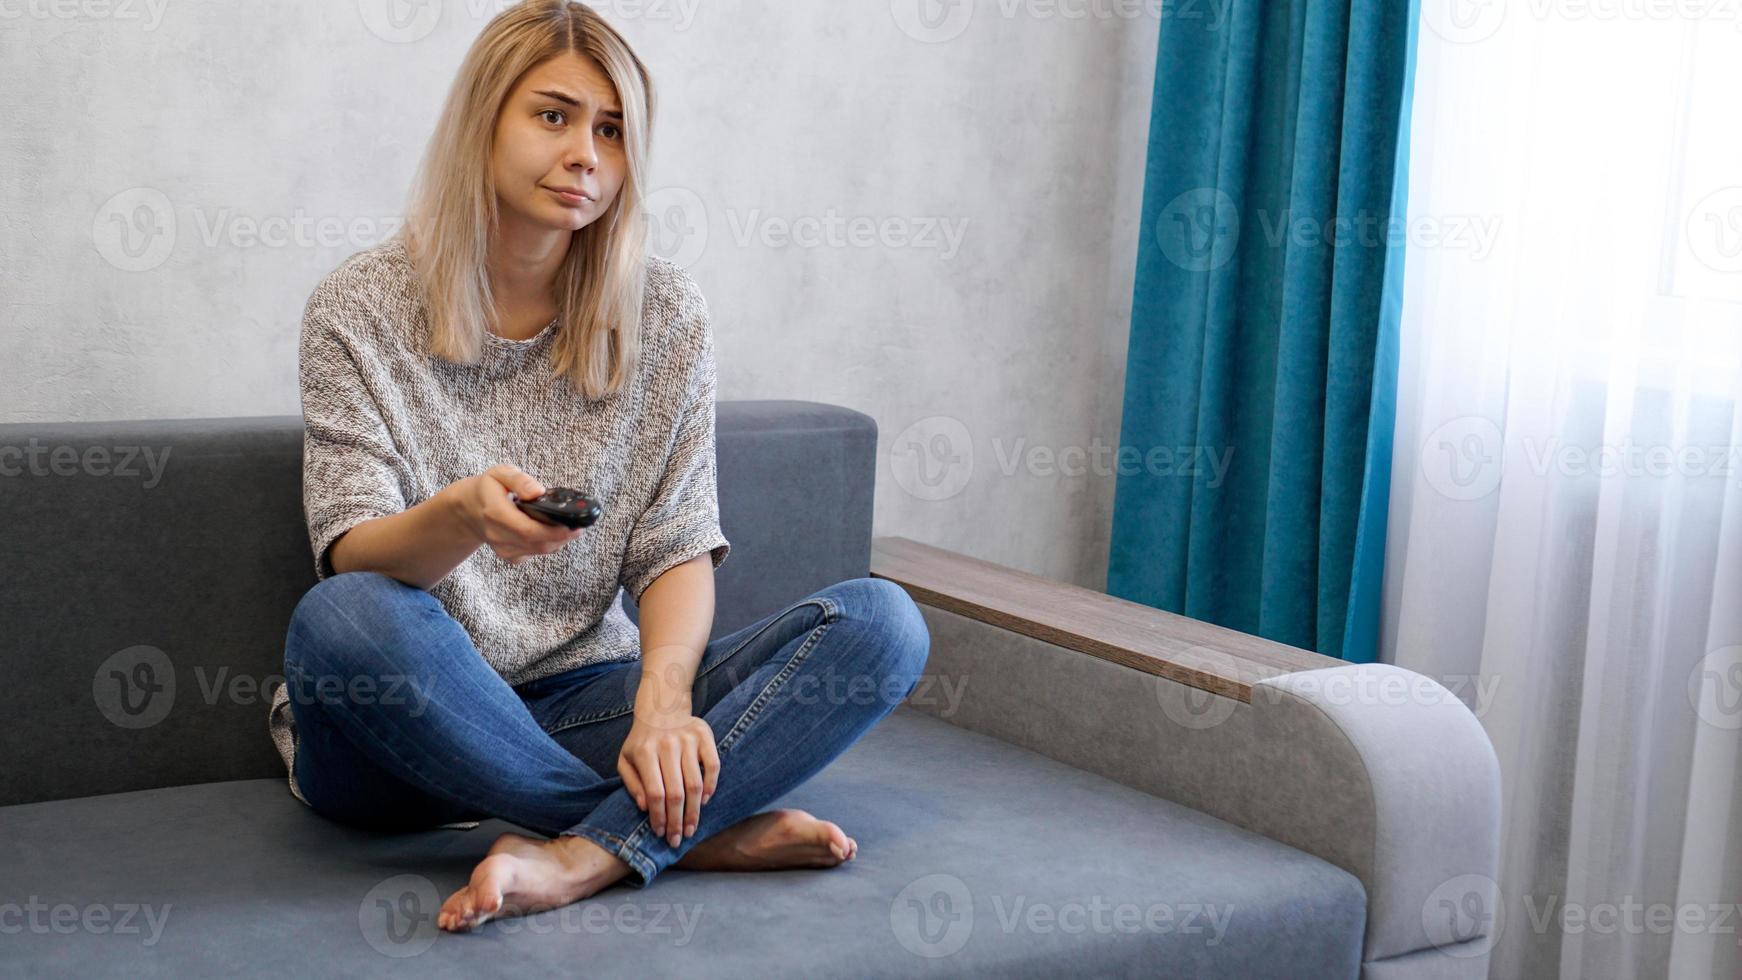 Jeune femme changeant les chaînes de télévision avec télécommande assise sur un canapé photo